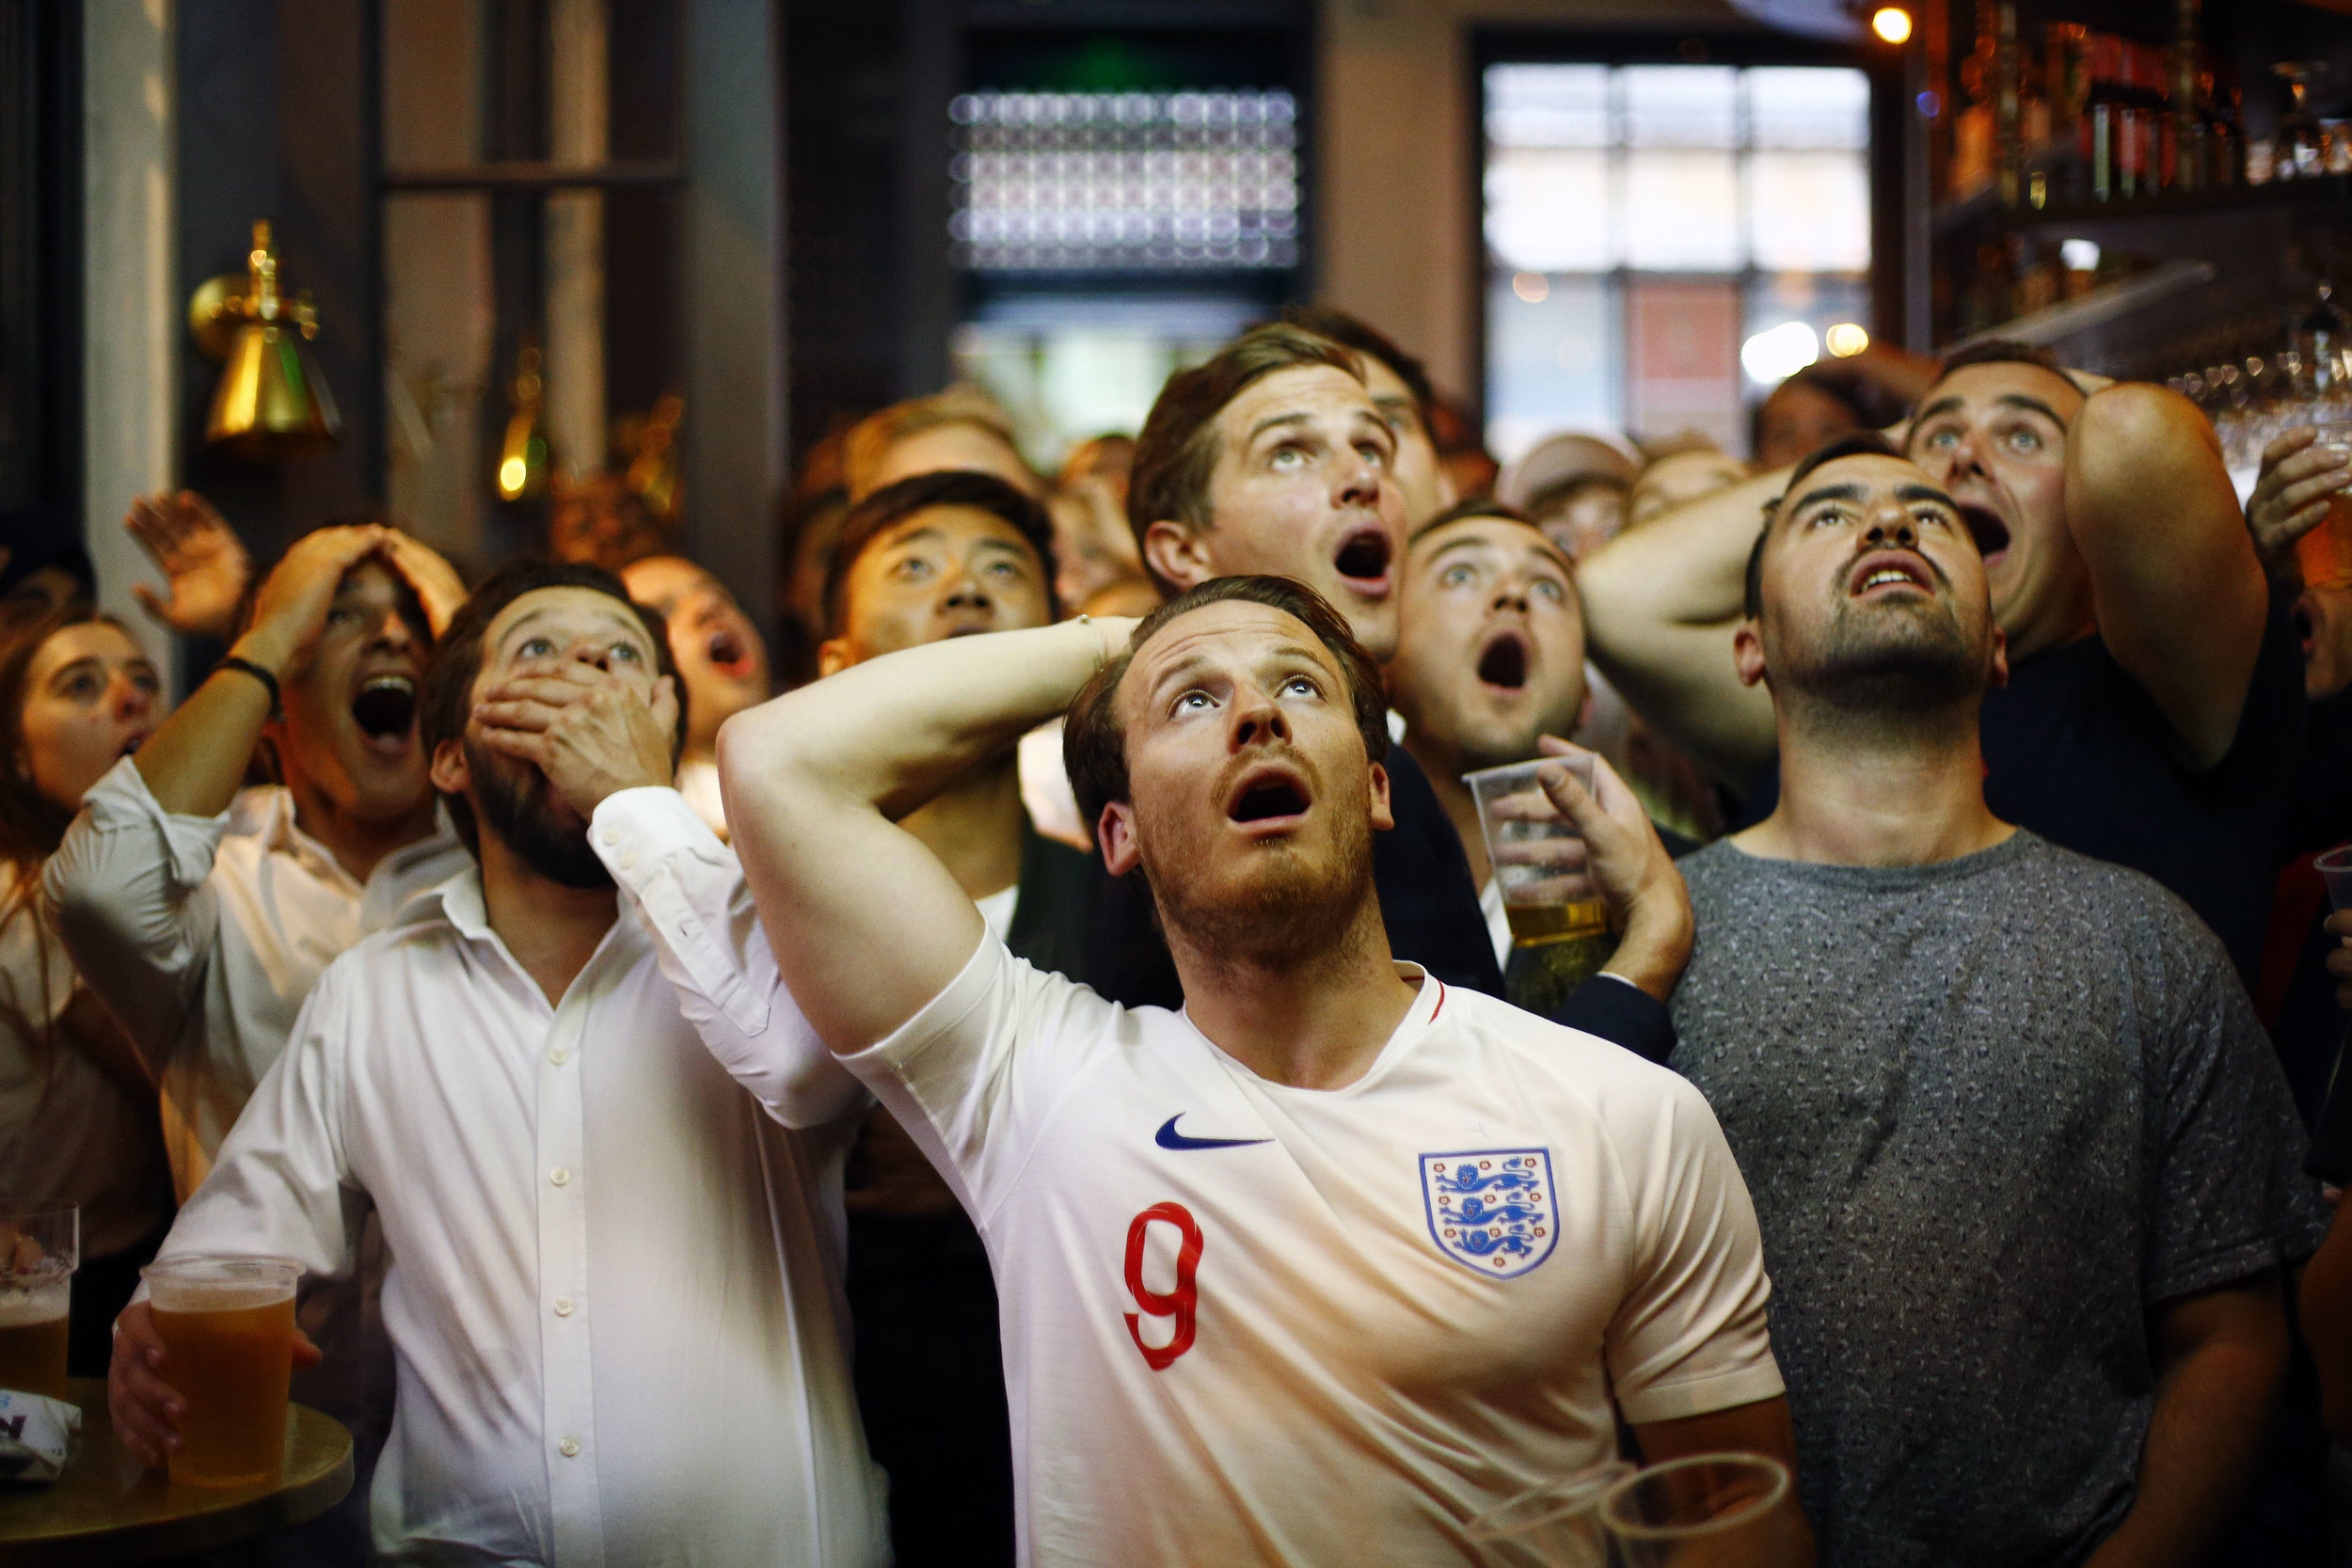  England fans watch the Croatia v England World Cup semi-final in a pub near Trafalgar Square, London.
Photo by Henry Nicholls, 11 July 2018
 